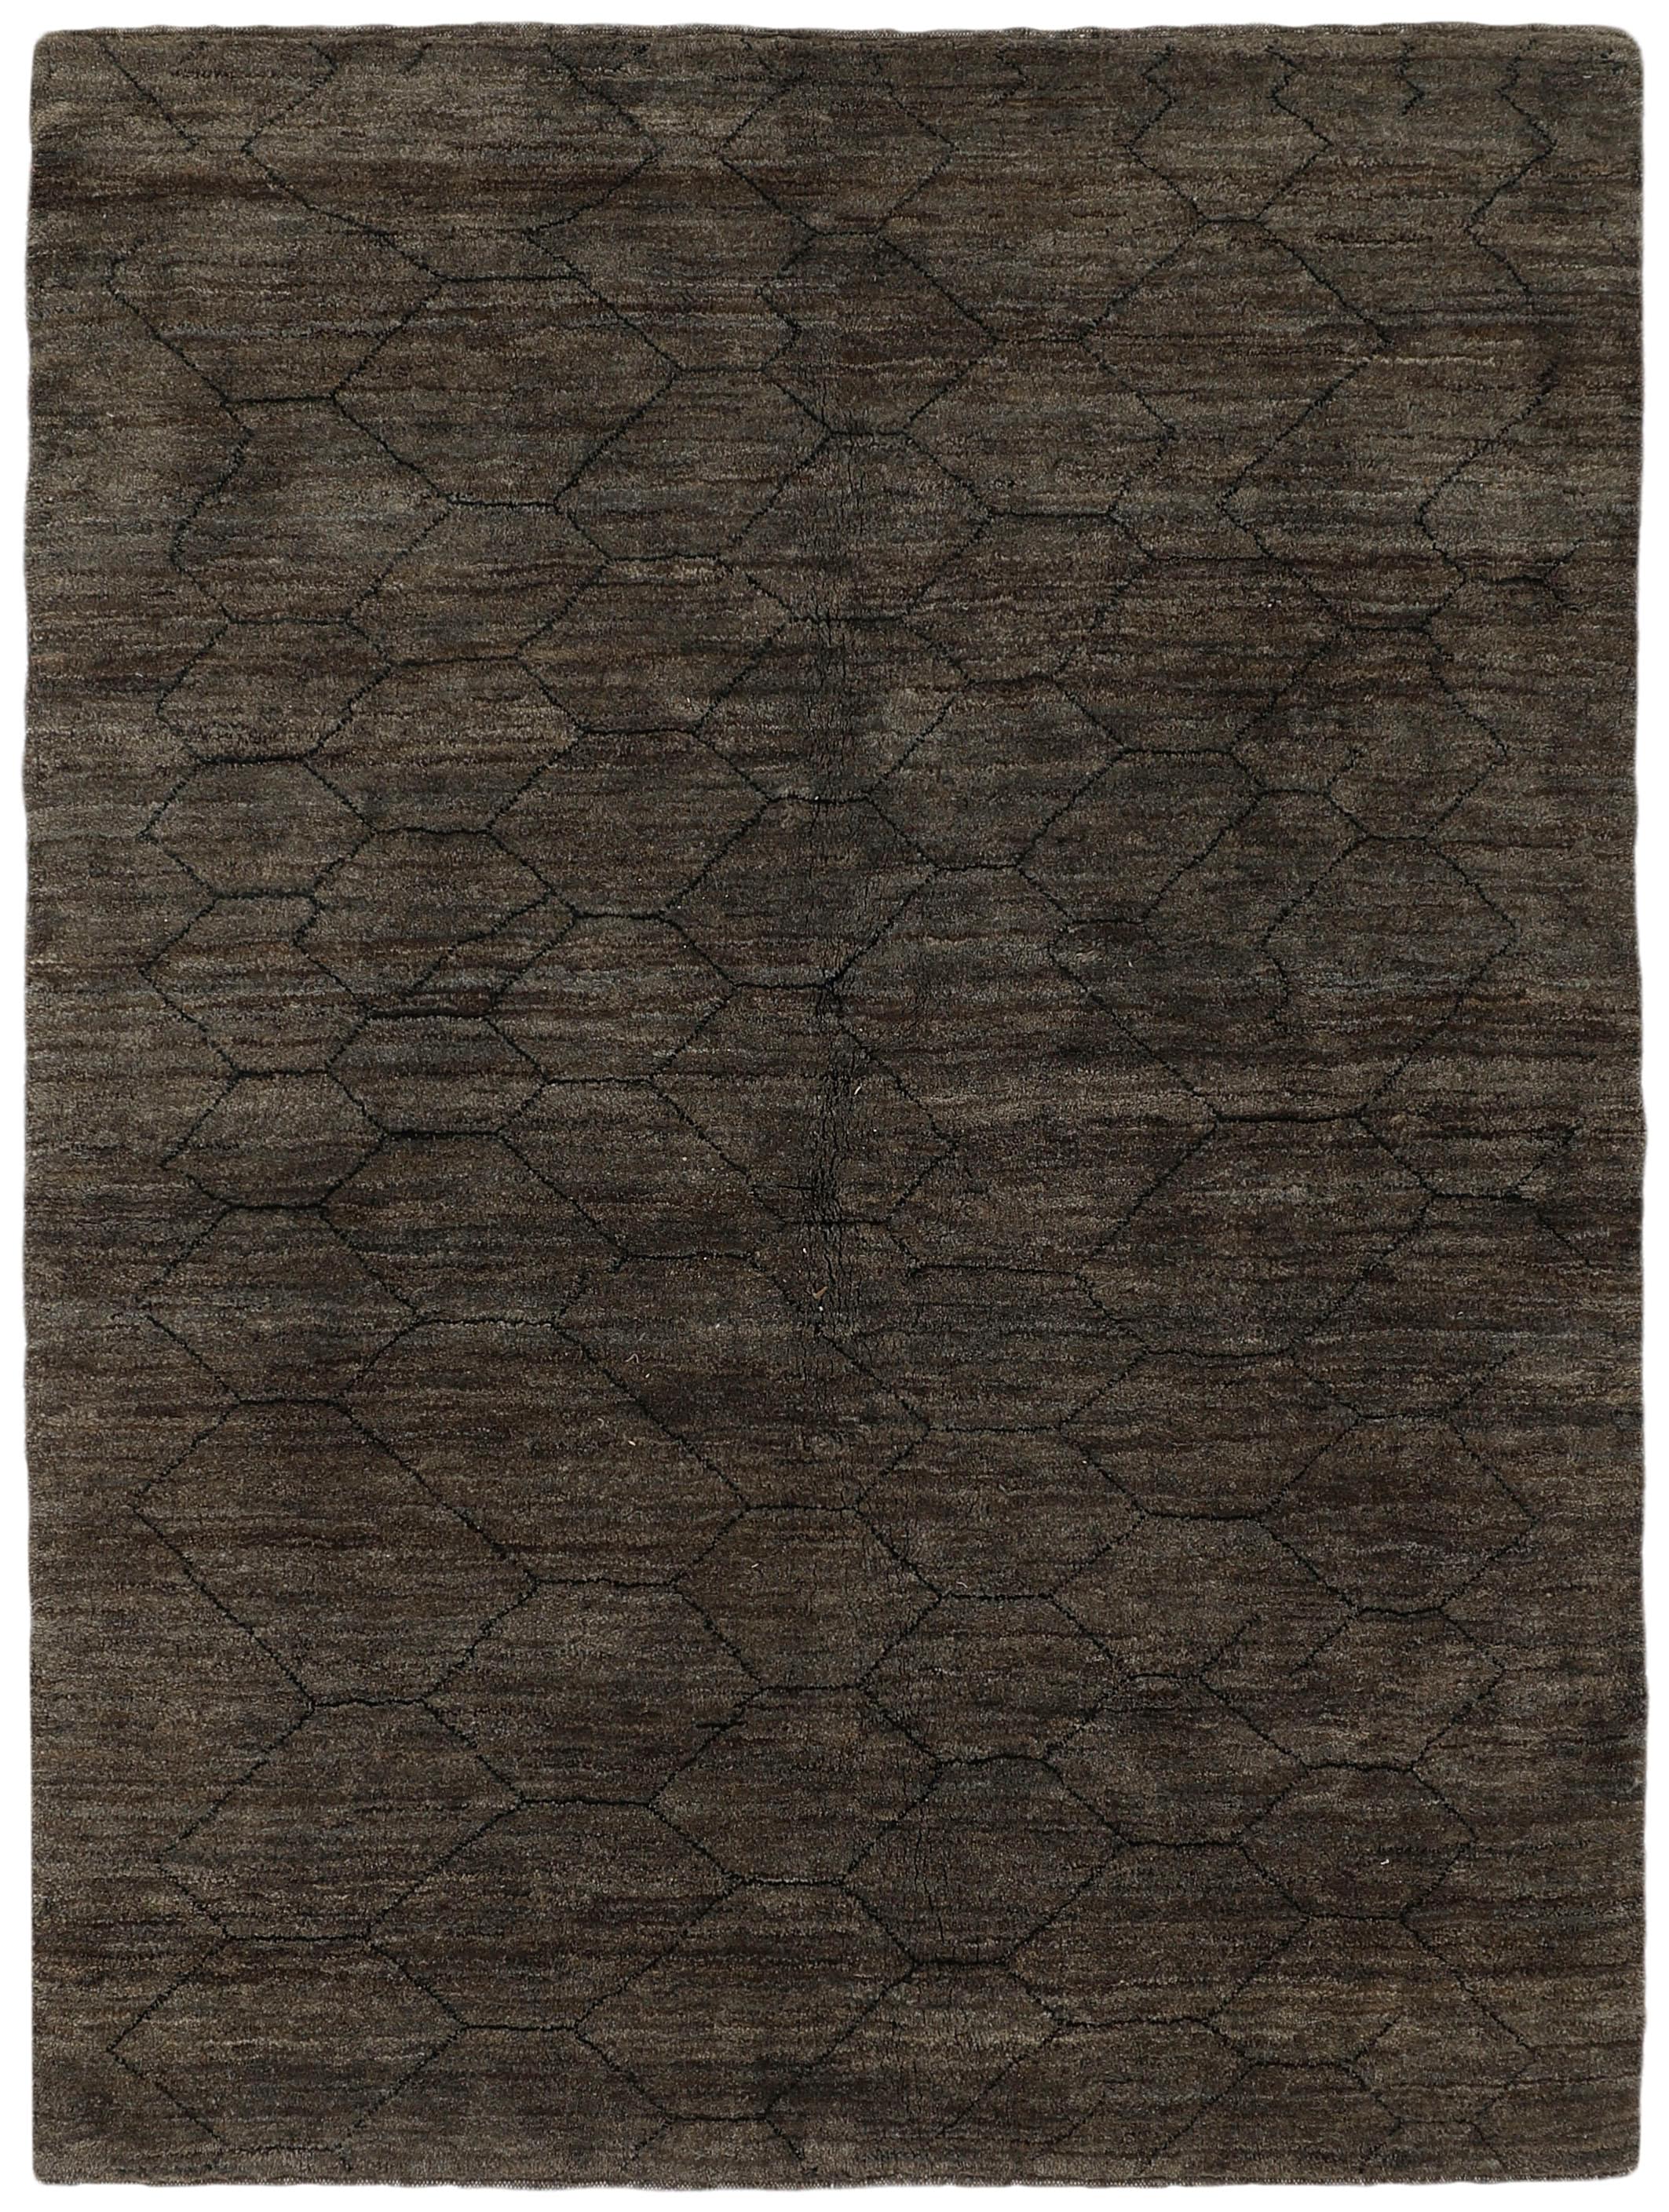 Authentic Oriental Kelim flatweave rug in black and brown